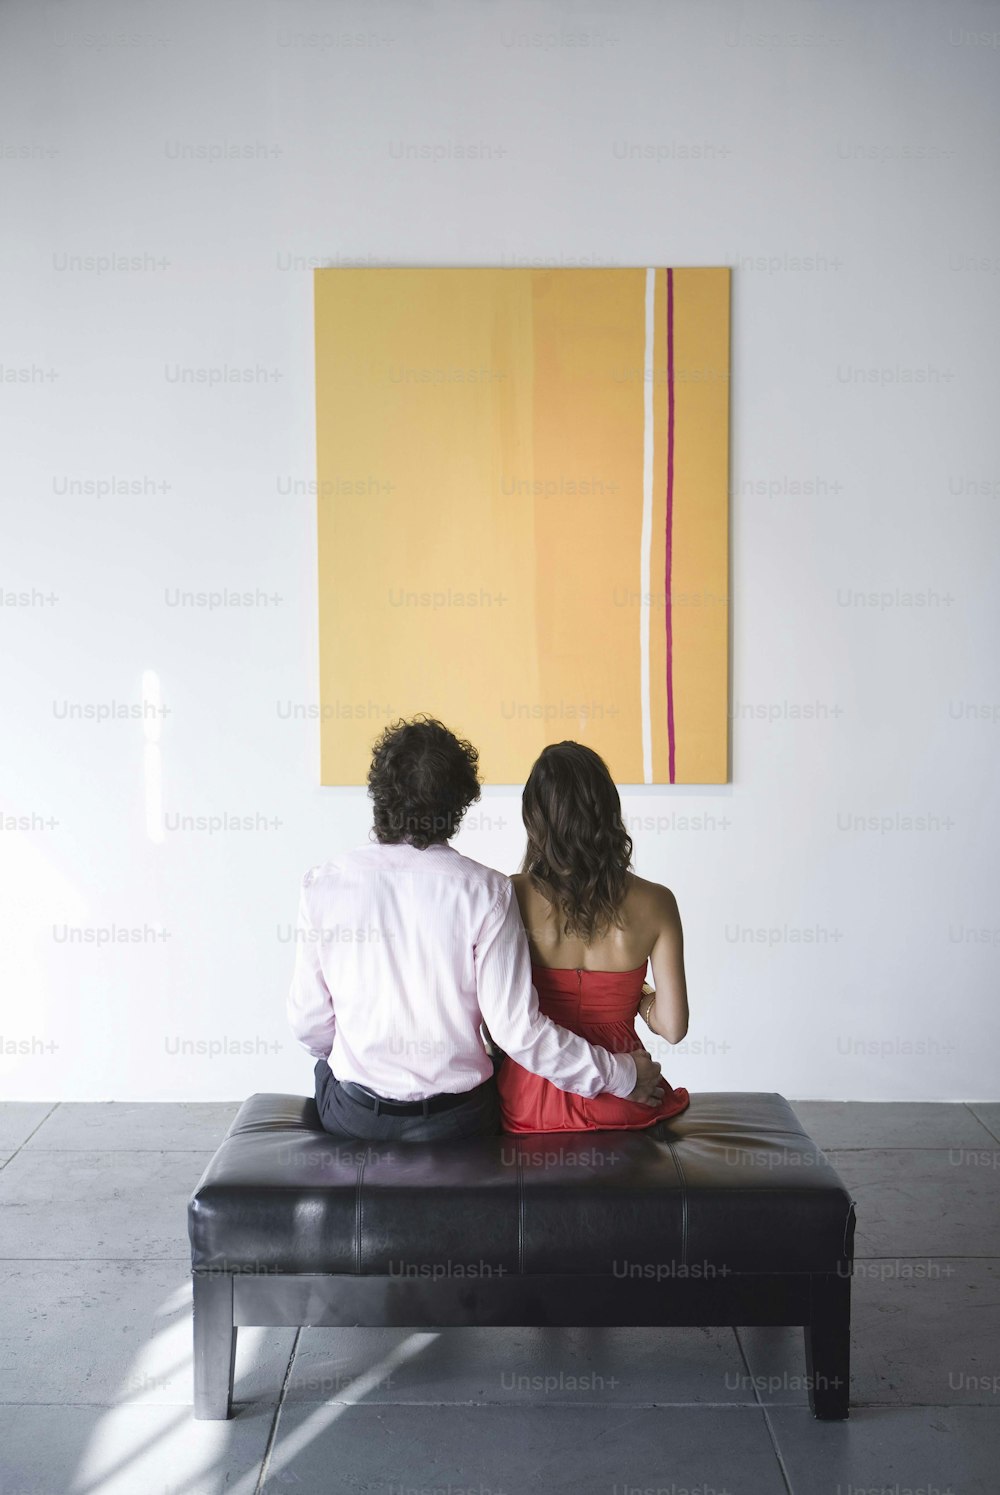 Un hombre y una mujer sentados en un banco frente a una pintura